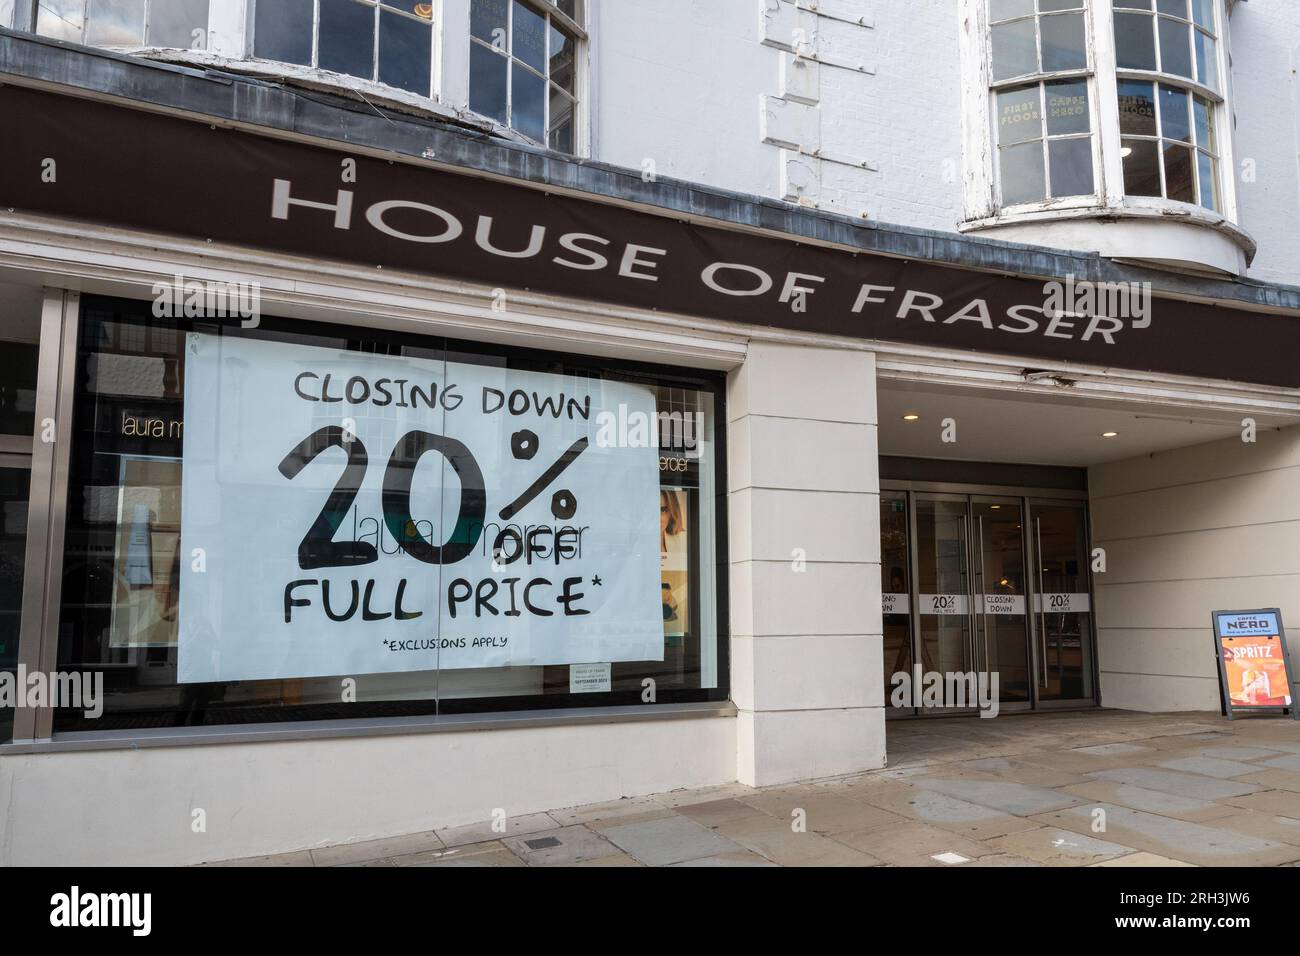 Le grand magasin House of Fraser à Guildford, Surrey, Angleterre, Royaume-Uni, ferme ses portes le 30 septembre 2023. Photographié le 13 août 2023, de grandes affiches dans les vitrines du magasin haut de gamme annoncent une réduction de 20% sur la vente de fermeture. Banque D'Images